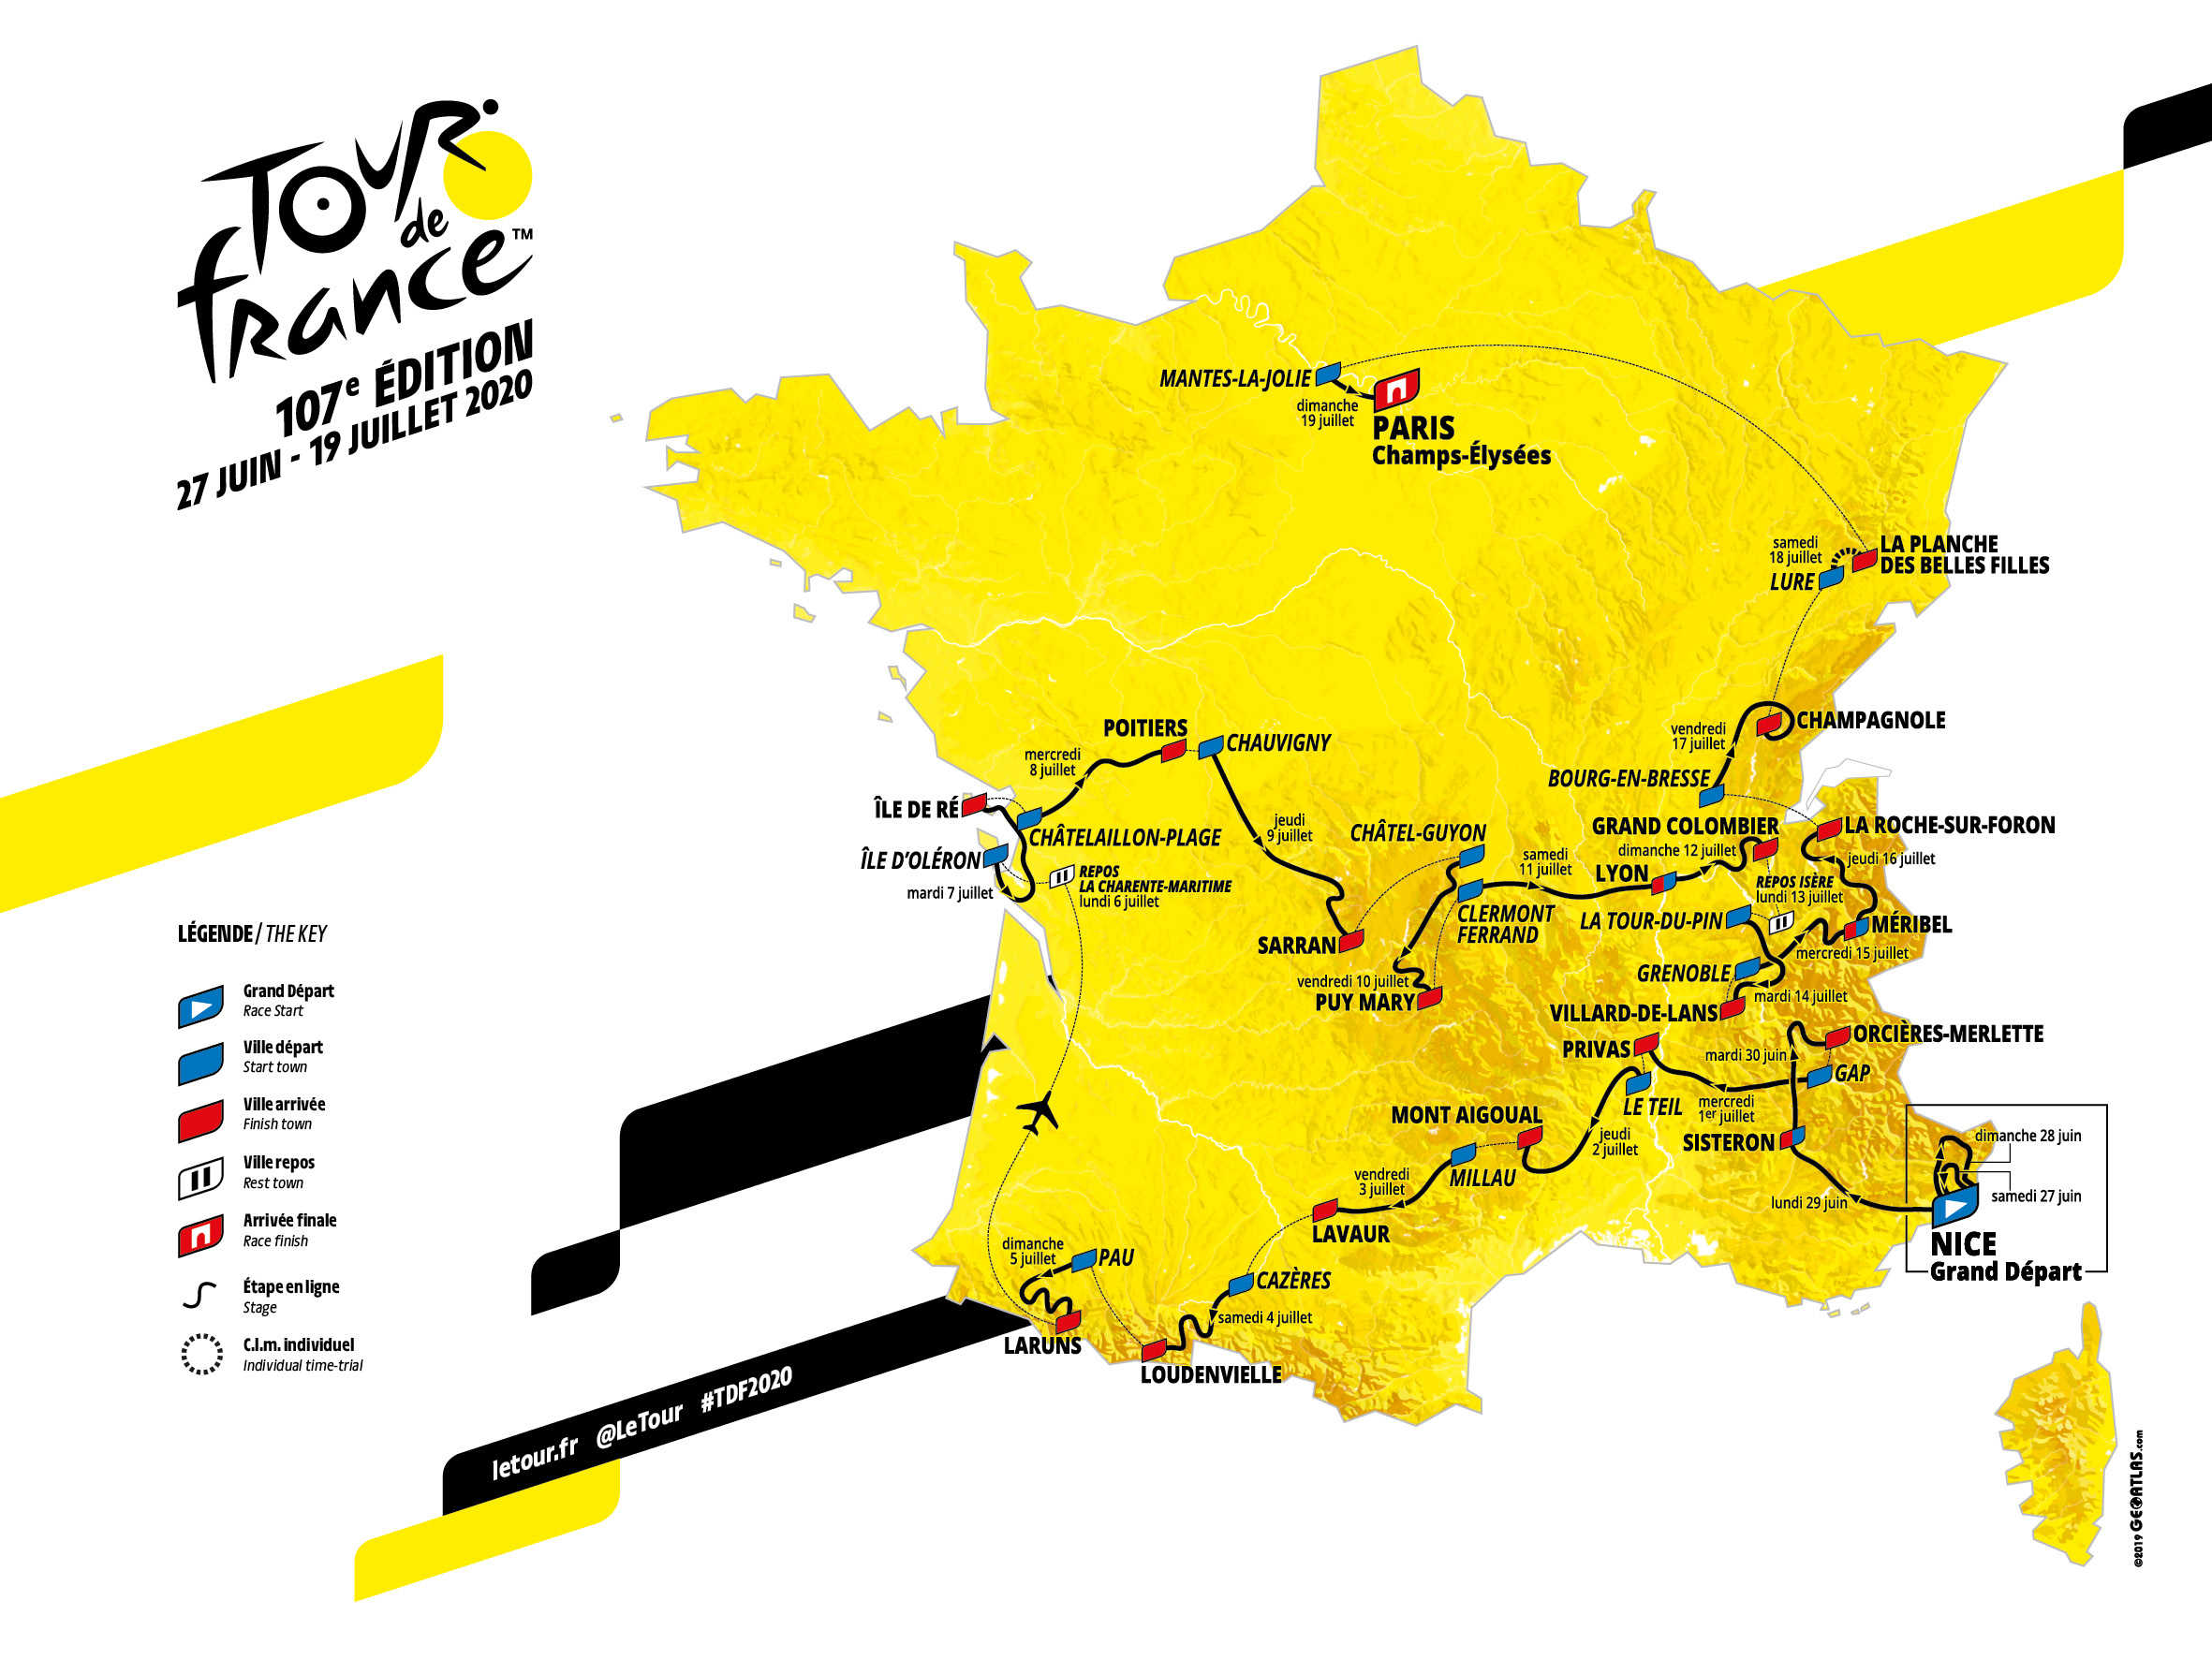 Tour de France 2020 Route Map